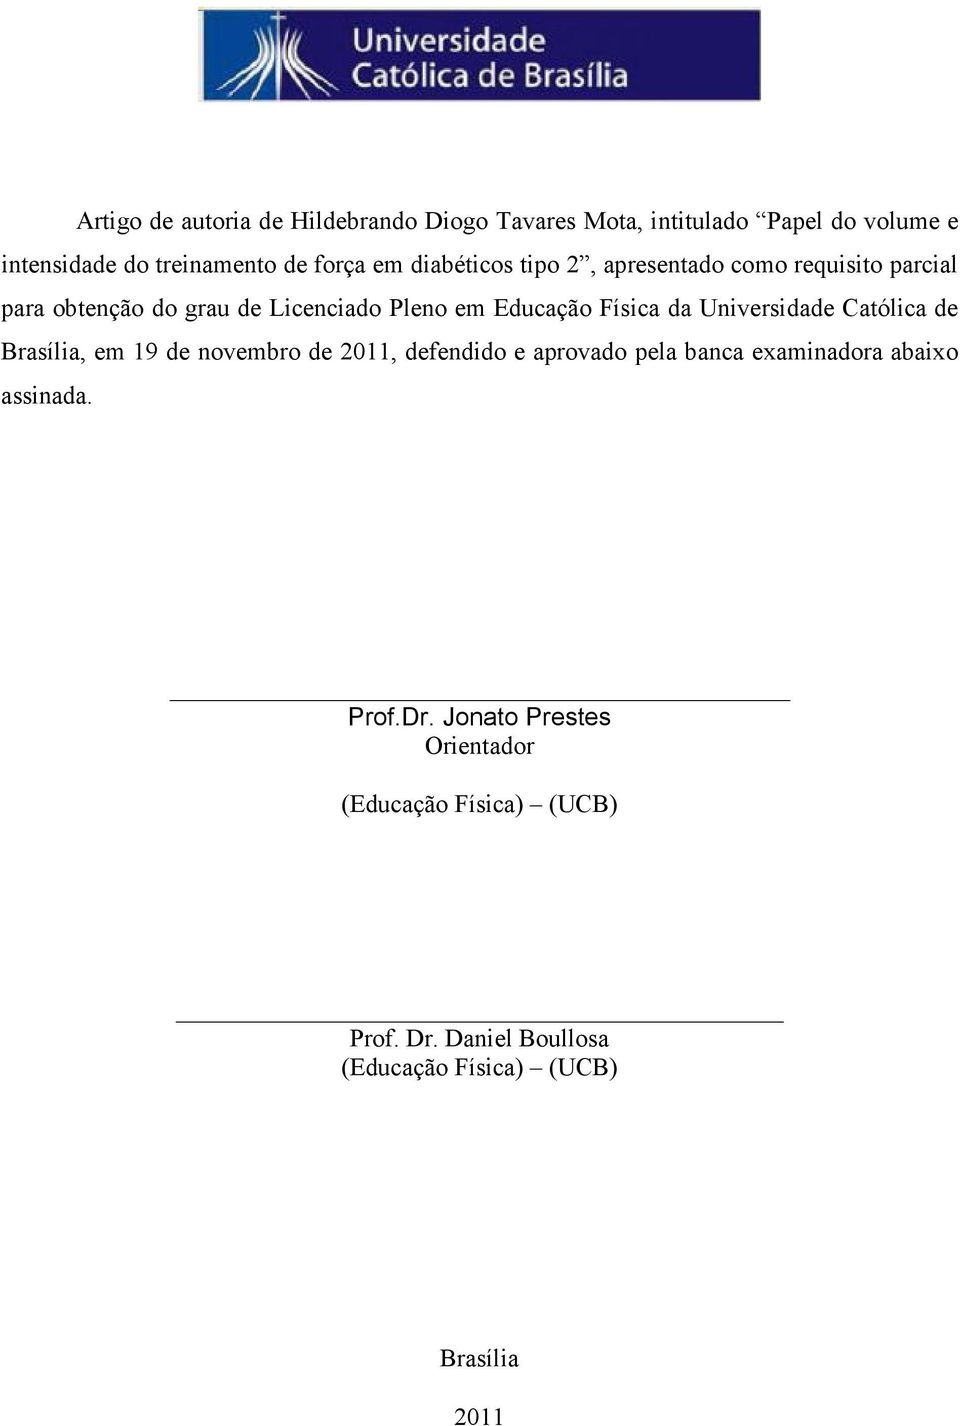 Universidade Católica de Brasília, em 19 de novembro de 2011, defendido e aprovado pela banca examinadora abaixo